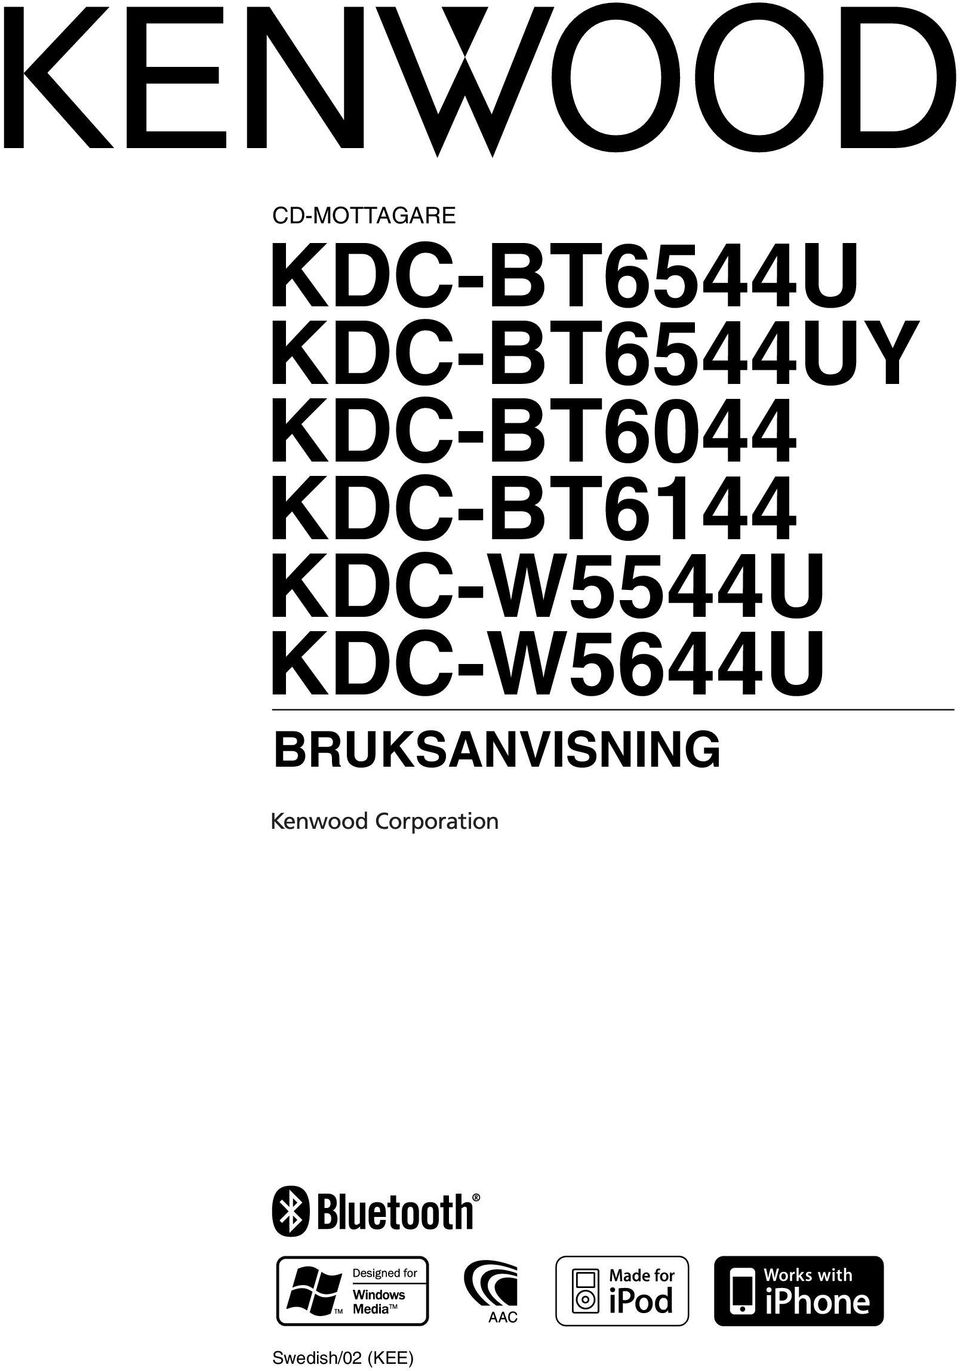 KDC-BT6144 KDC-W5544U